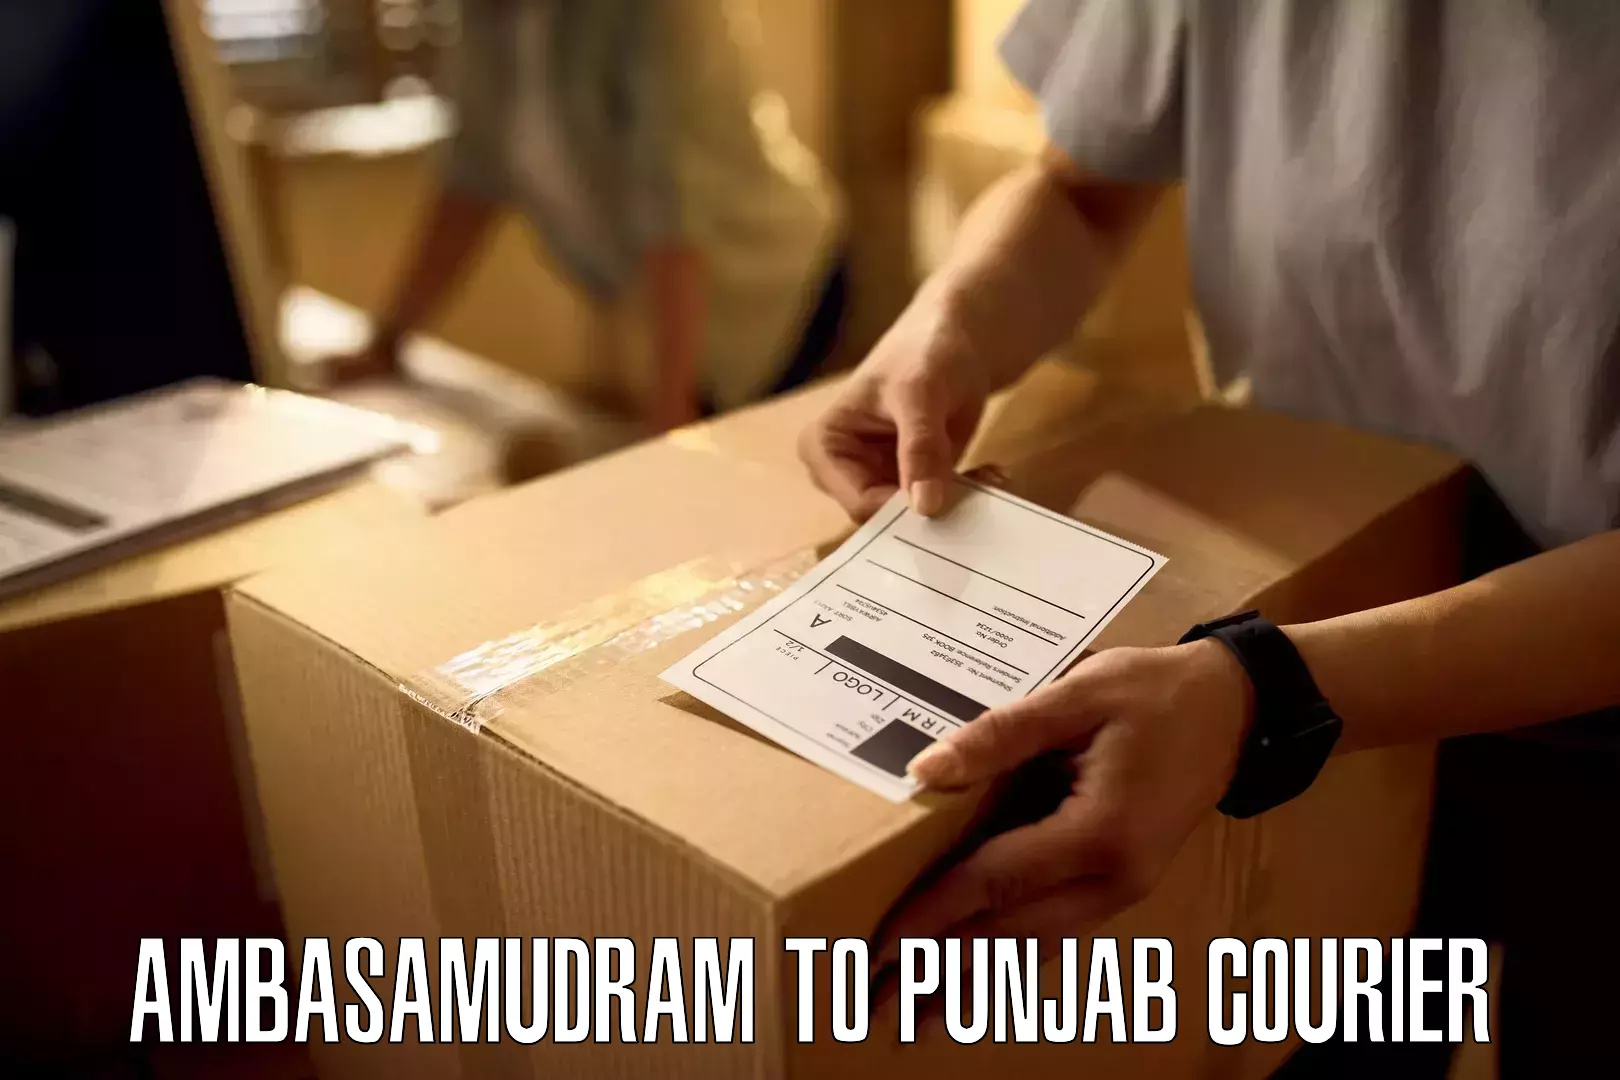 Quick dispatch service Ambasamudram to Punjab